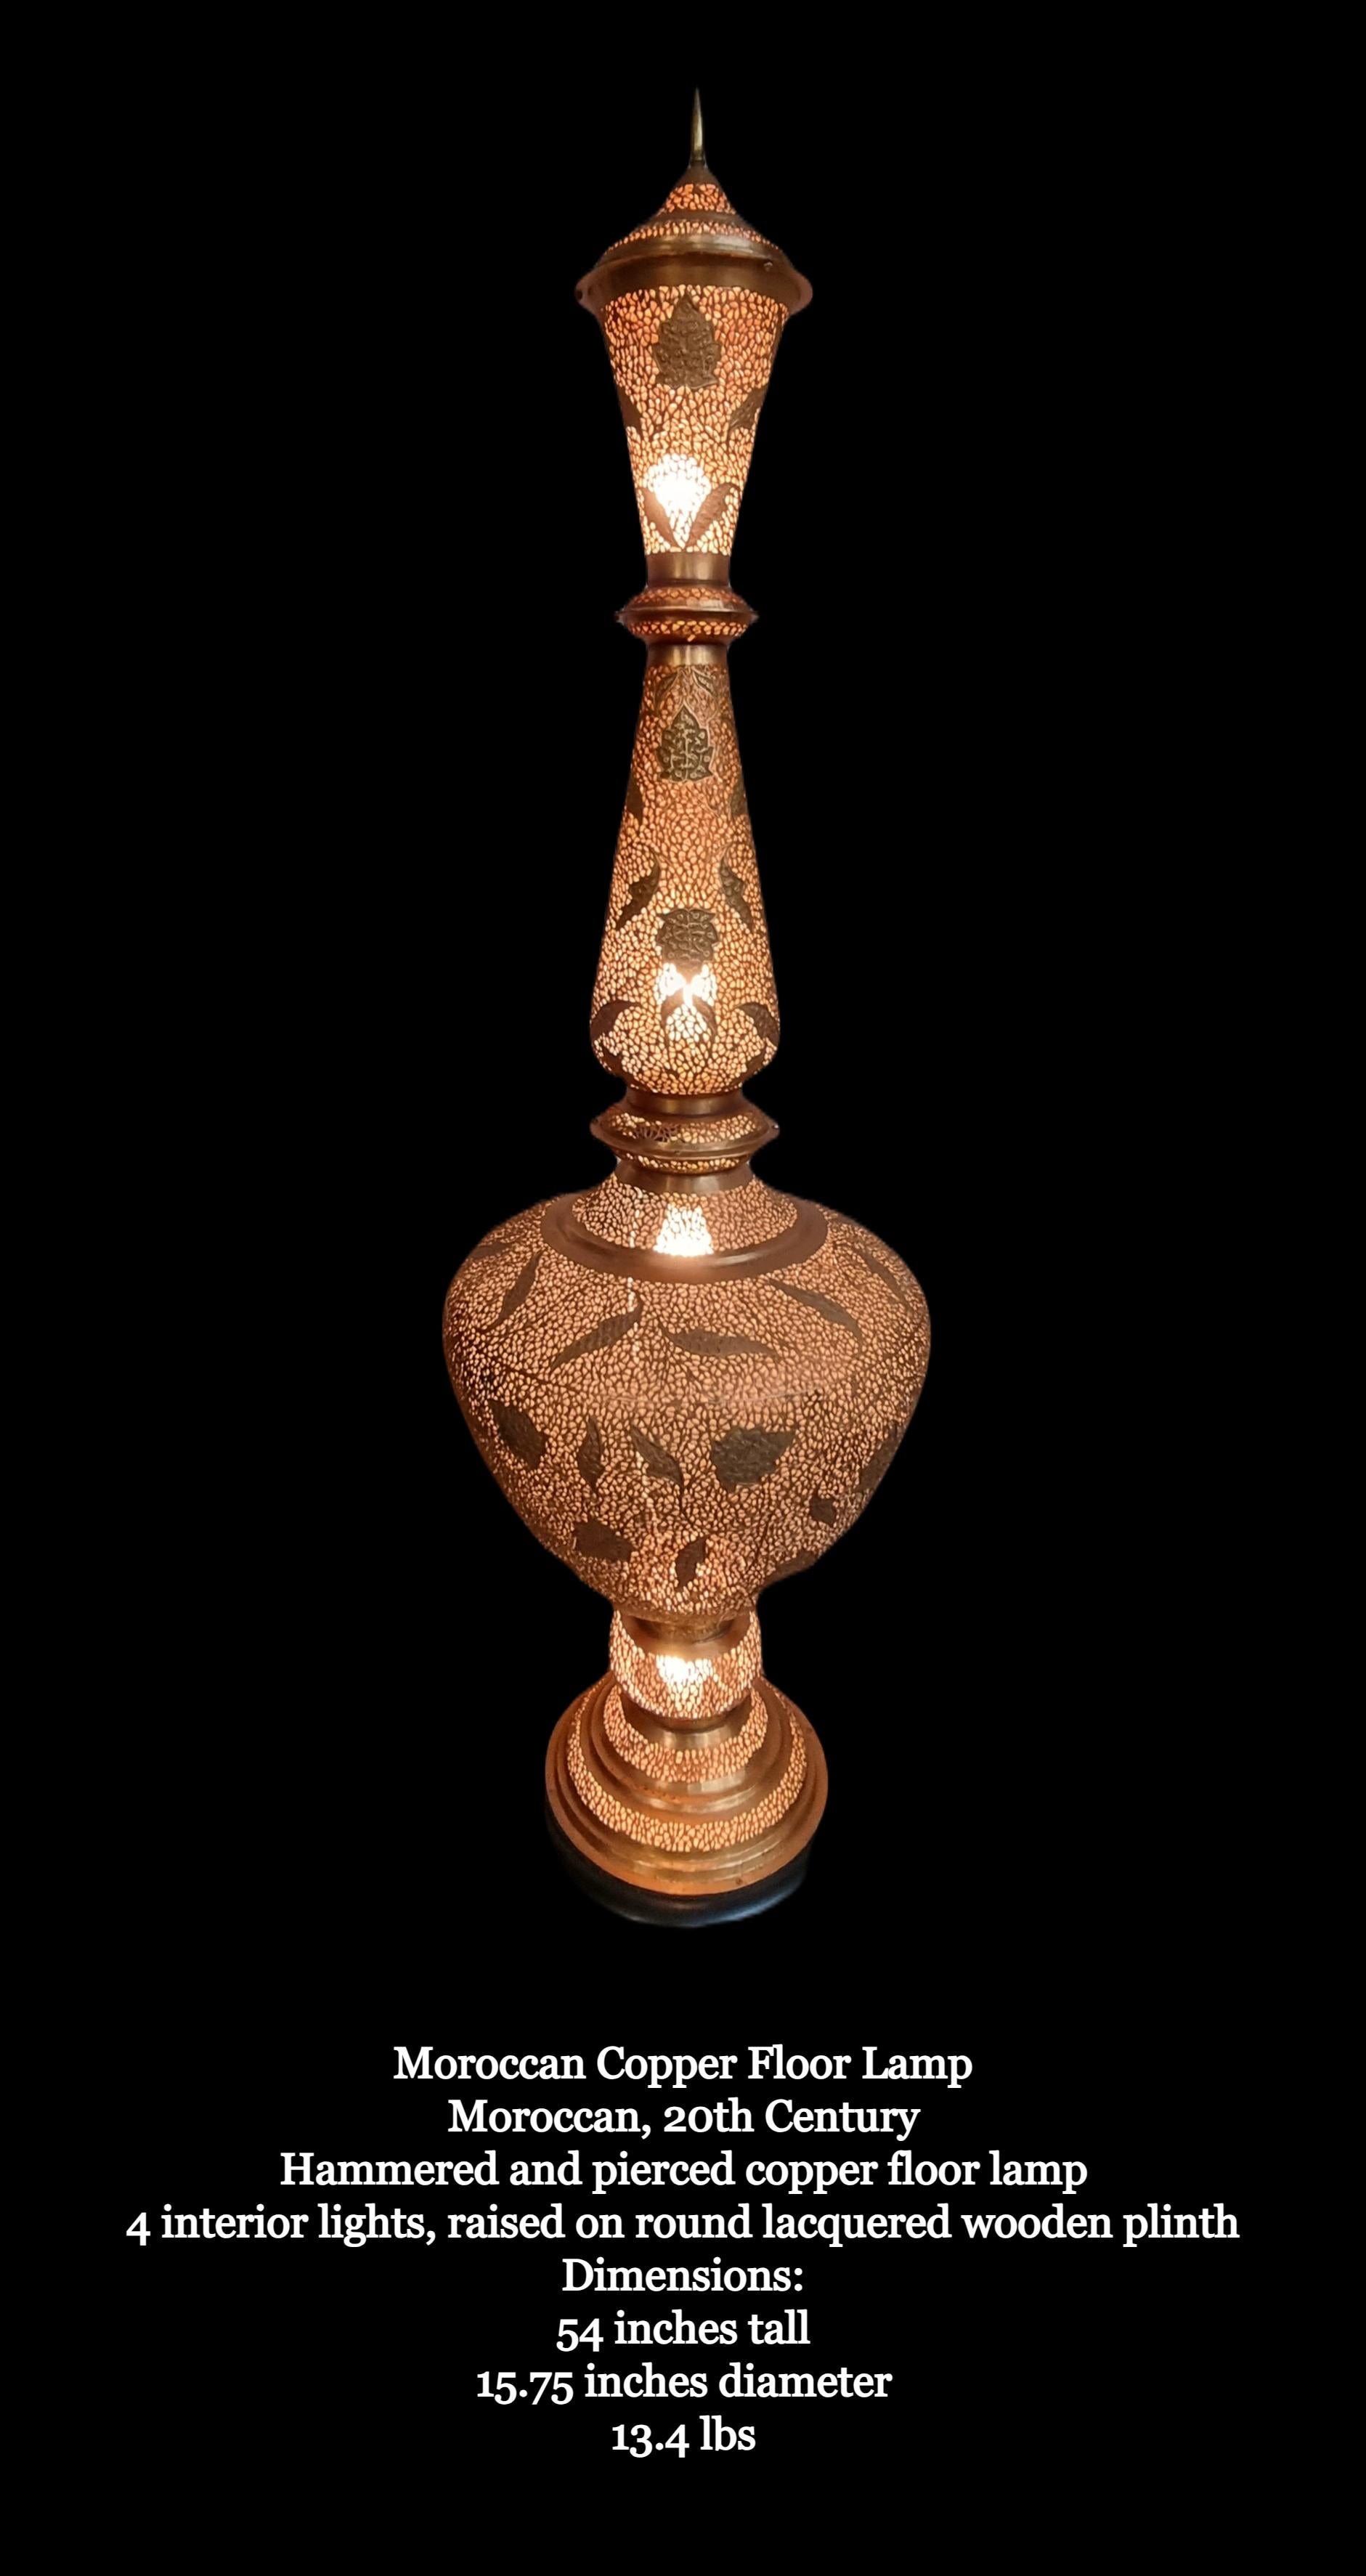 Beeindruckende marokkanische Stehlampe aus Kupfer/Legierung, handgehämmert und durchbohrt

Marokkanisch, 20. Jahrhundert.

Gehämmerte und durchbrochene Stehlampe aus Kupfer/Legierung
4 Innenleuchten, auf rundem, lackiertem Holzsockel.
Aufgrund der